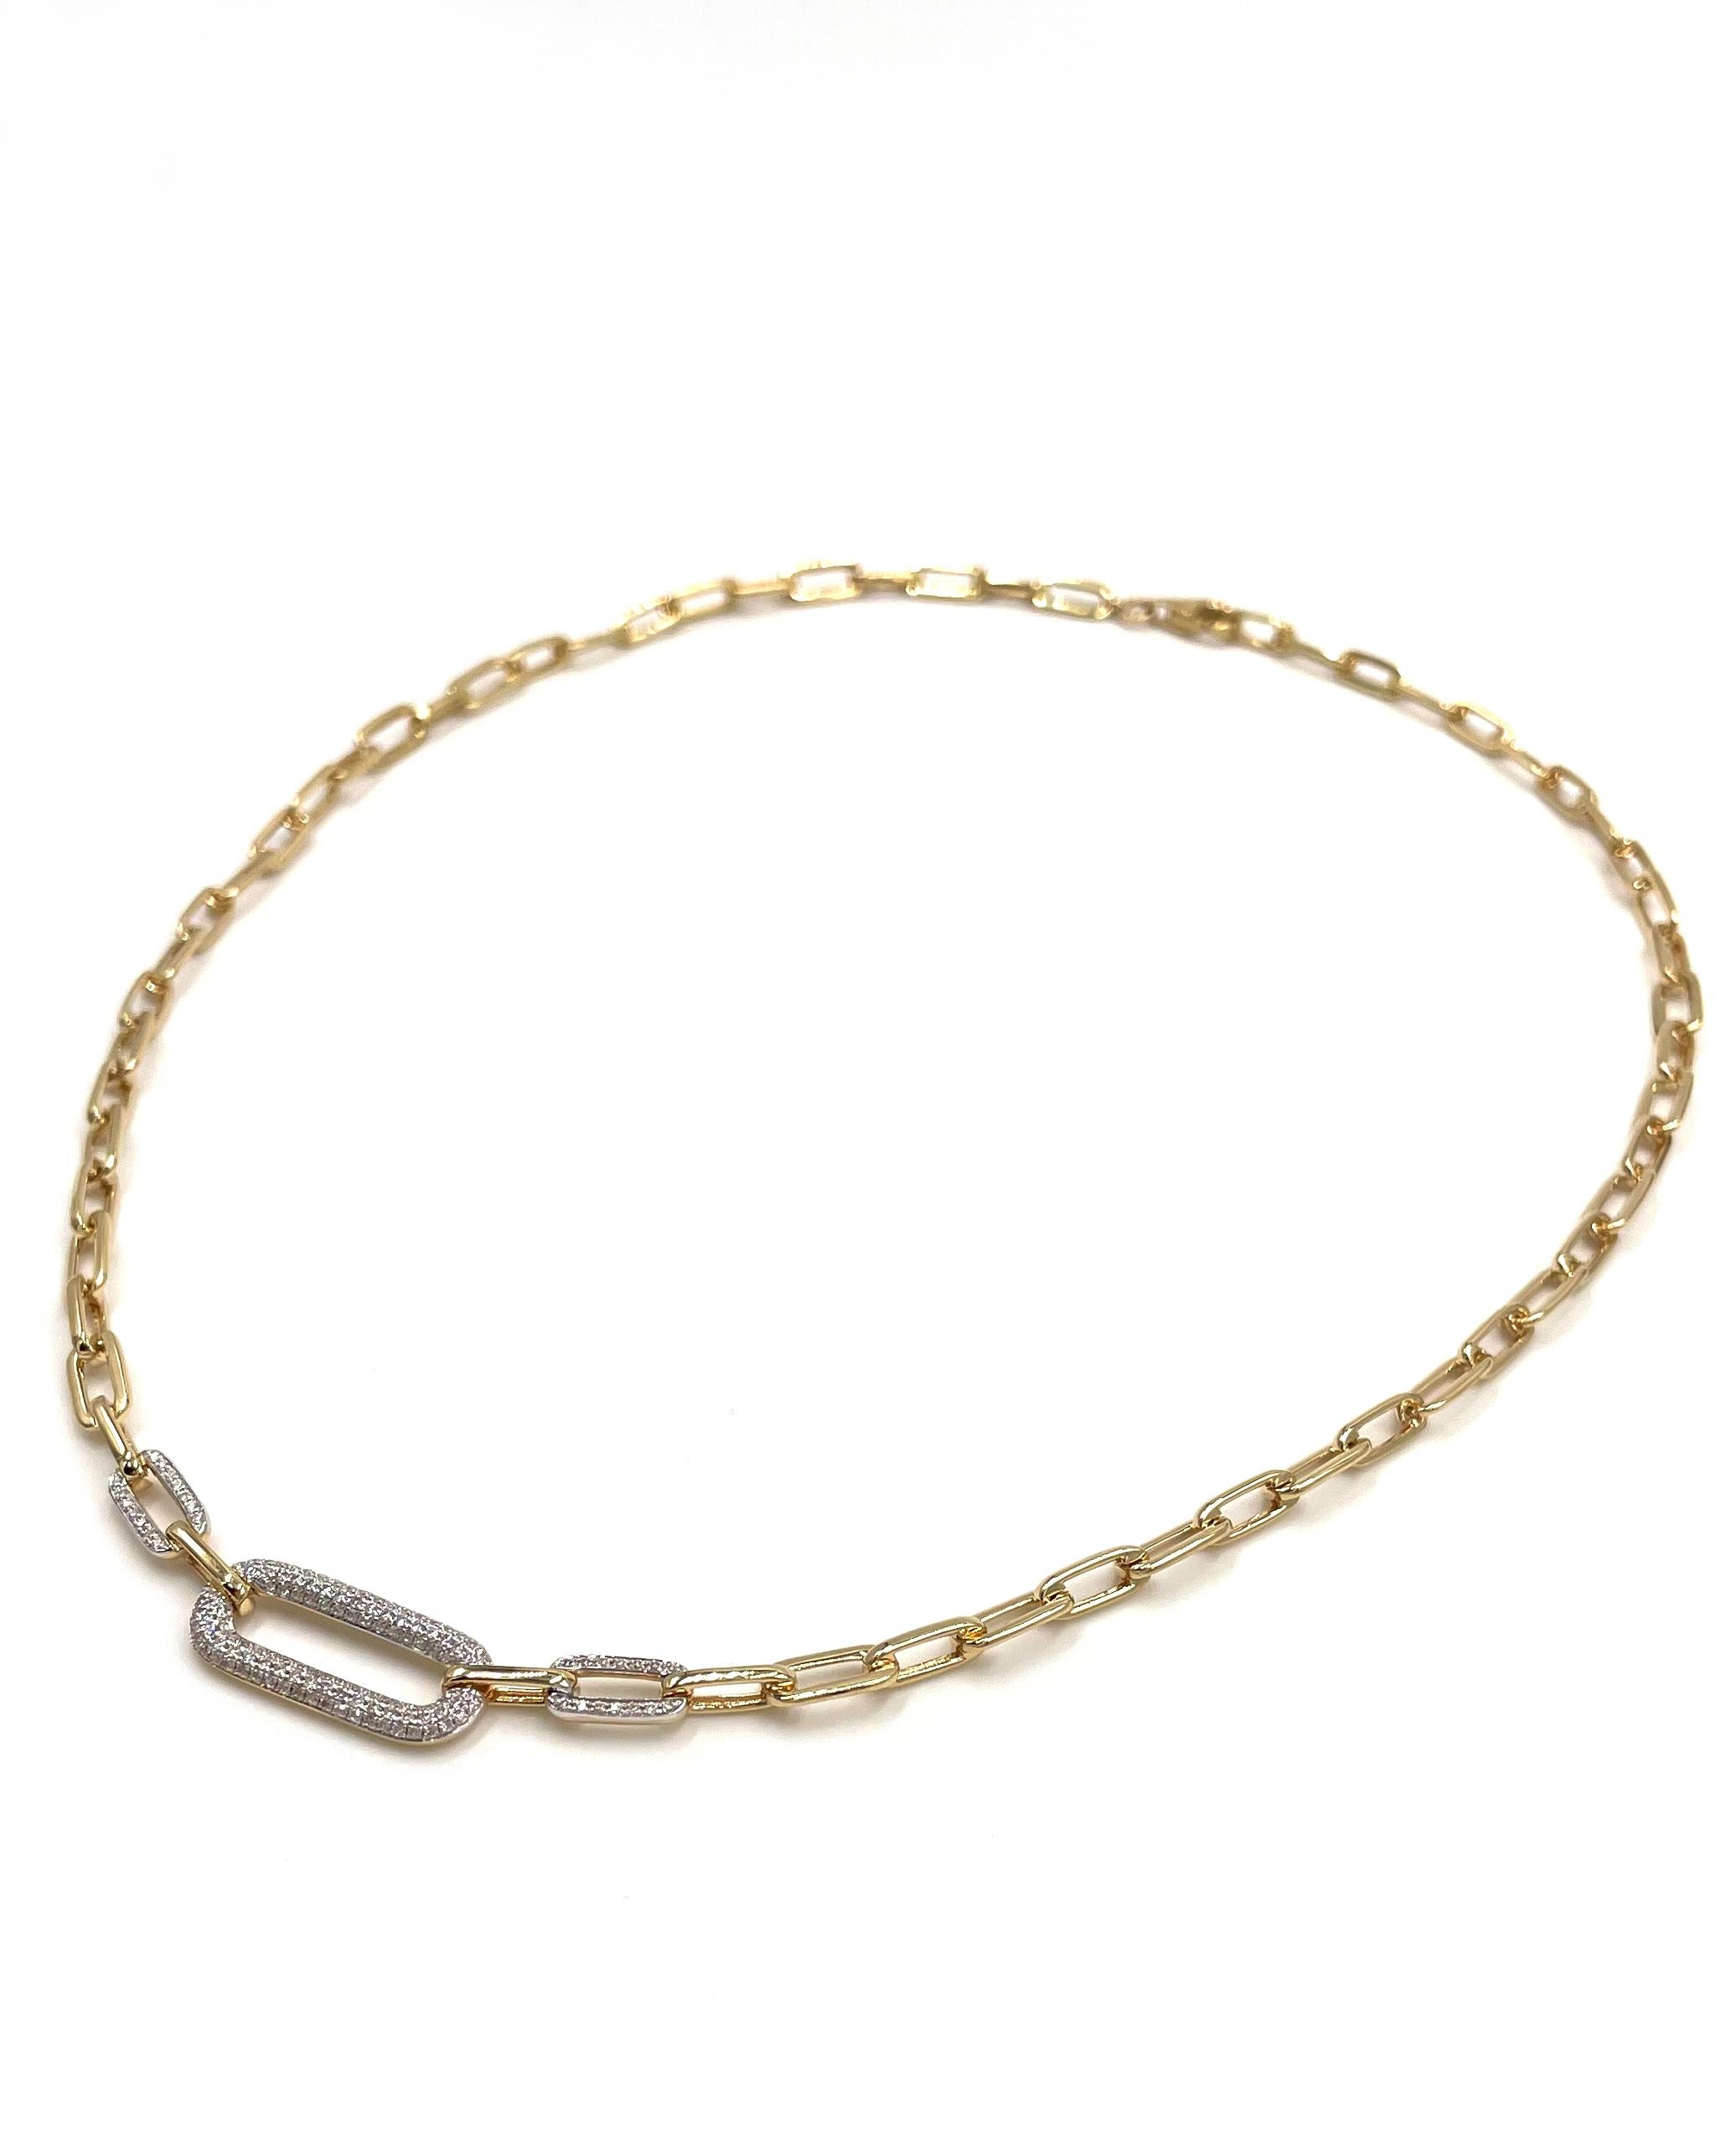 Büroklammer-Halskette aus 14 Karat Gelbgold, besetzt mit runden, gepflasterten Diamanten von insgesamt 0,41 Karat. Die Halskette ist 18 Zoll lang und hat einen Karabinerverschluss.